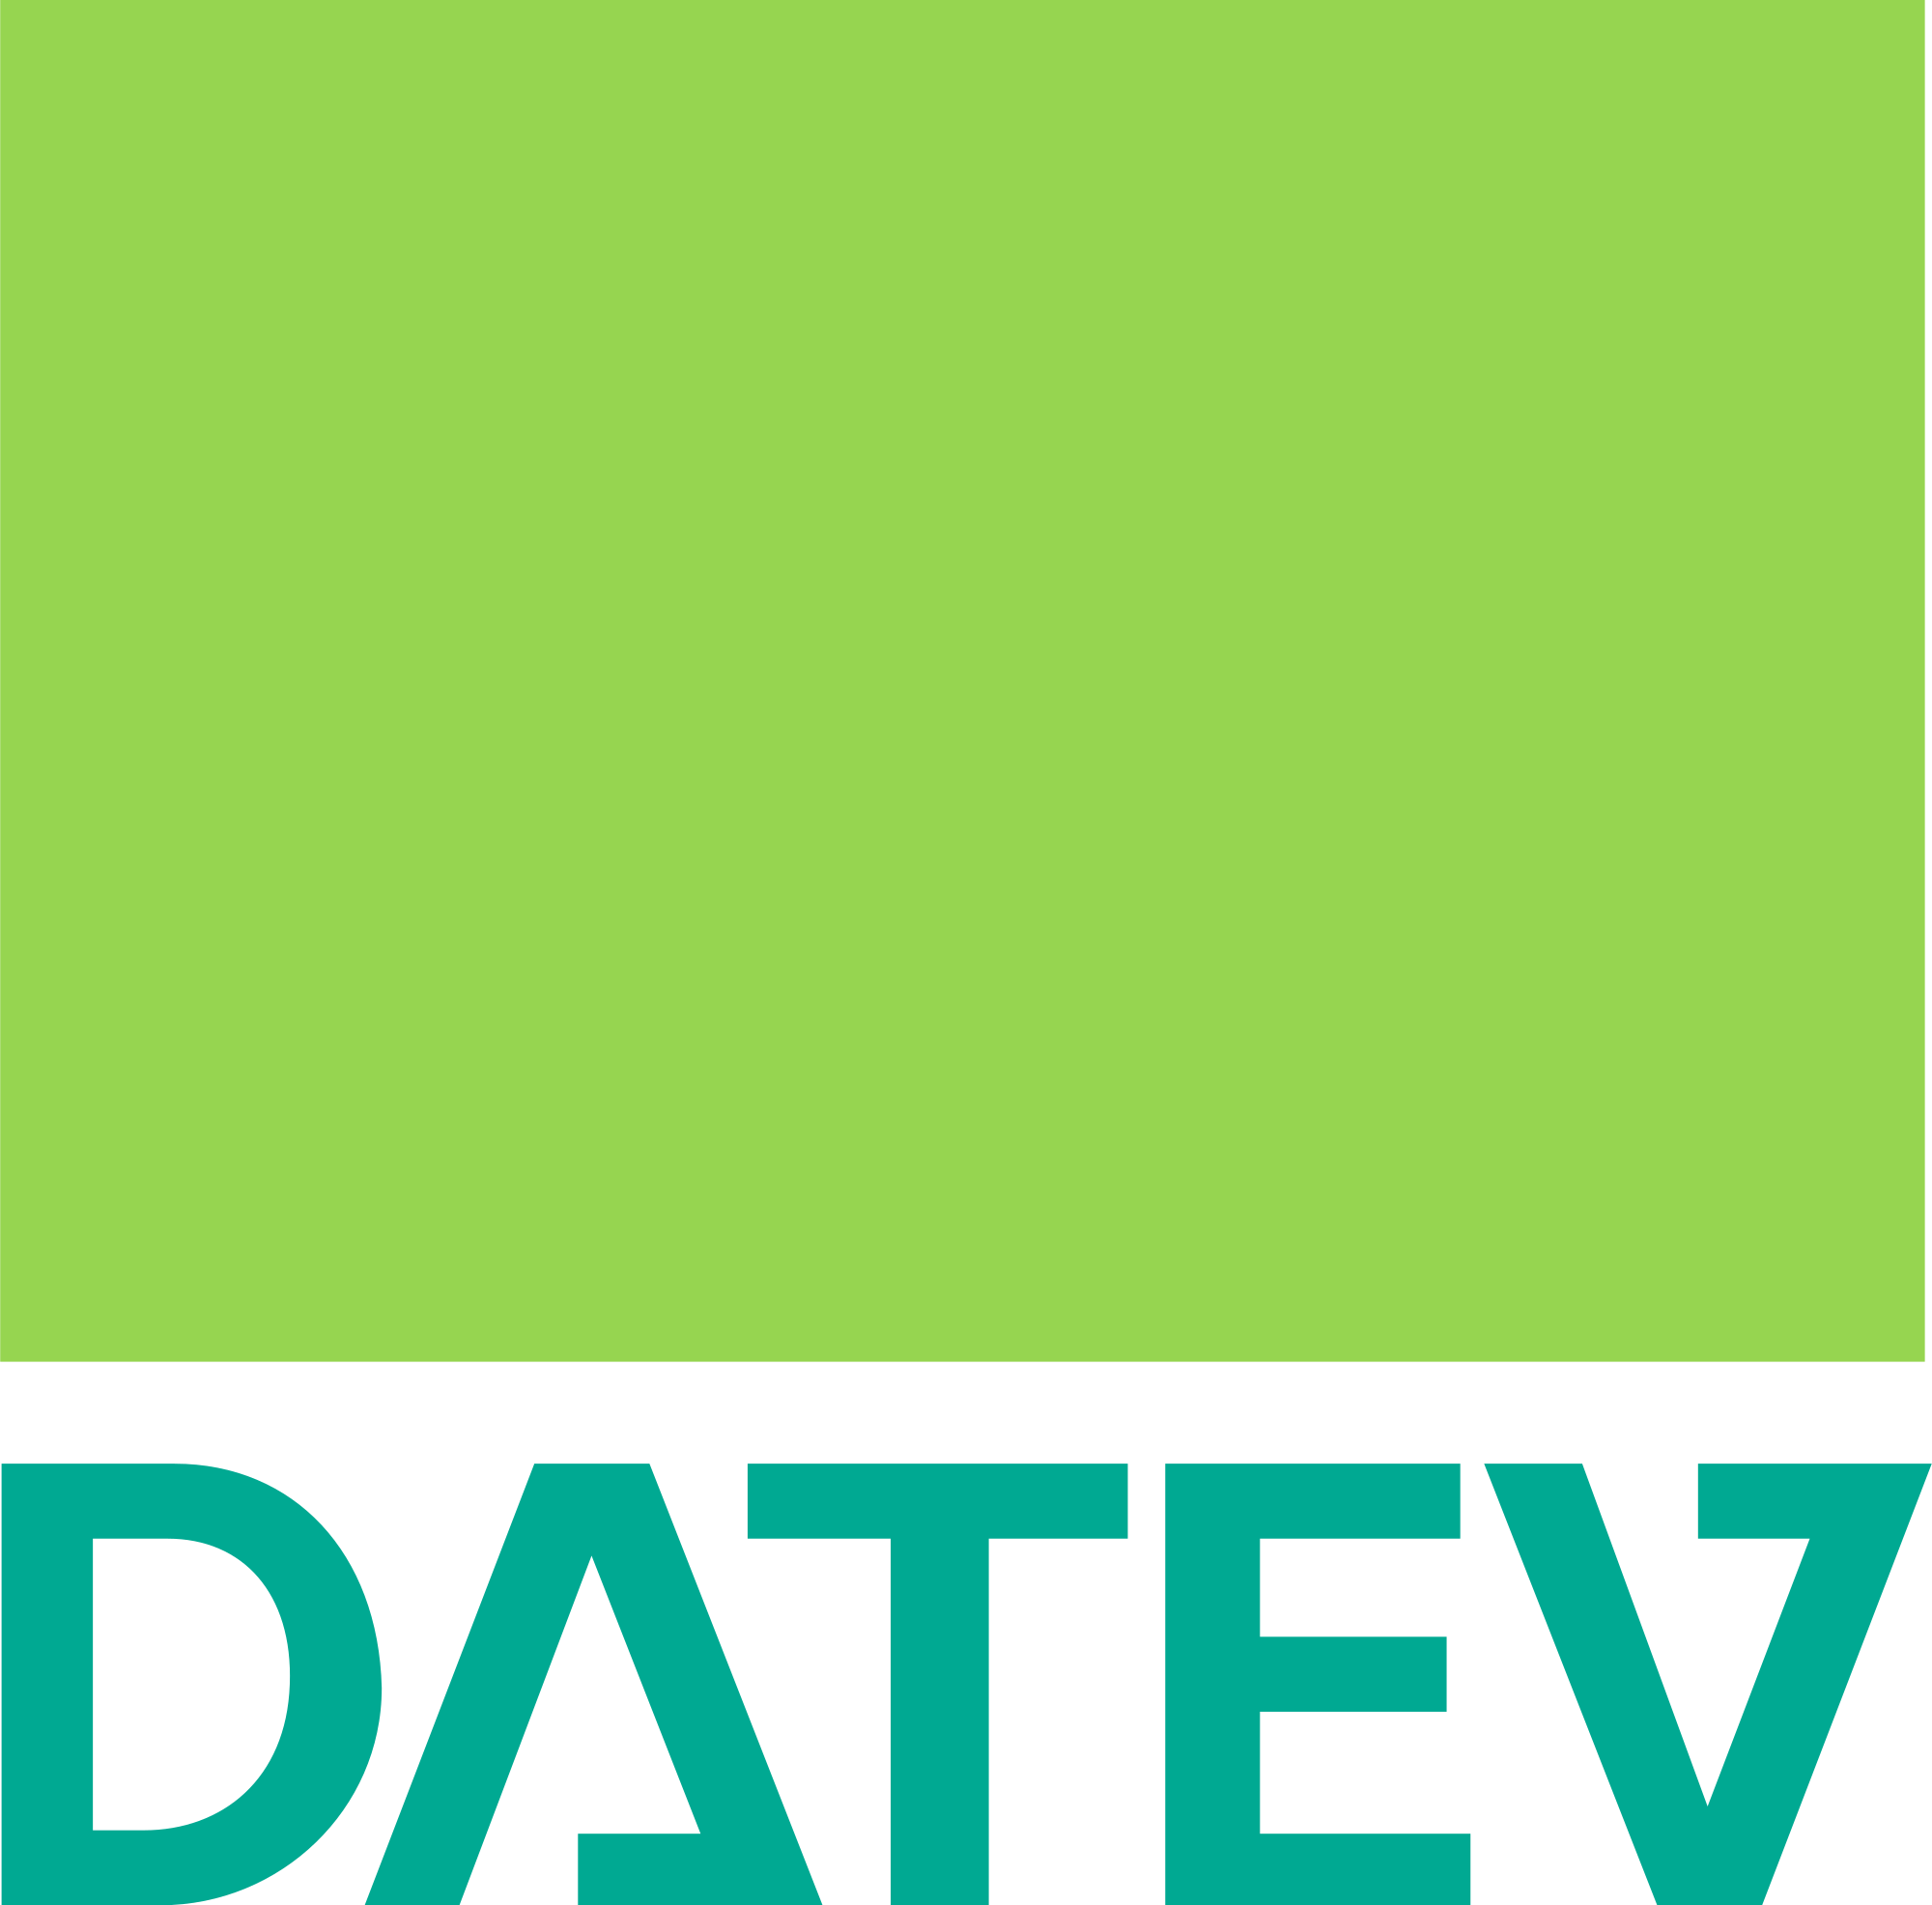 Logo DATEV eG